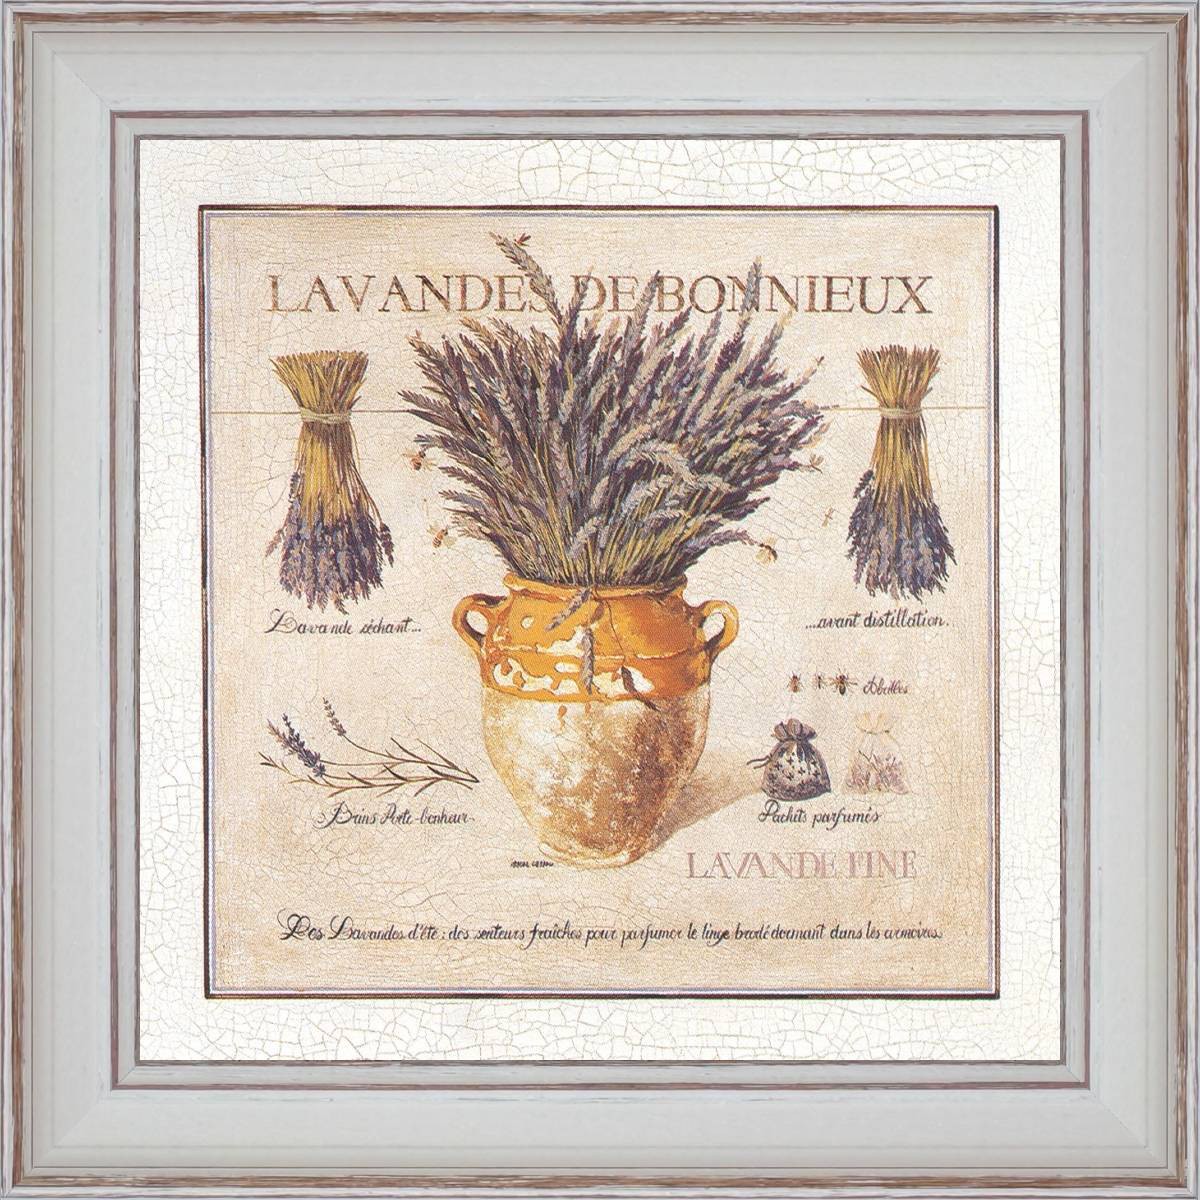 Lavender of Bonnieux